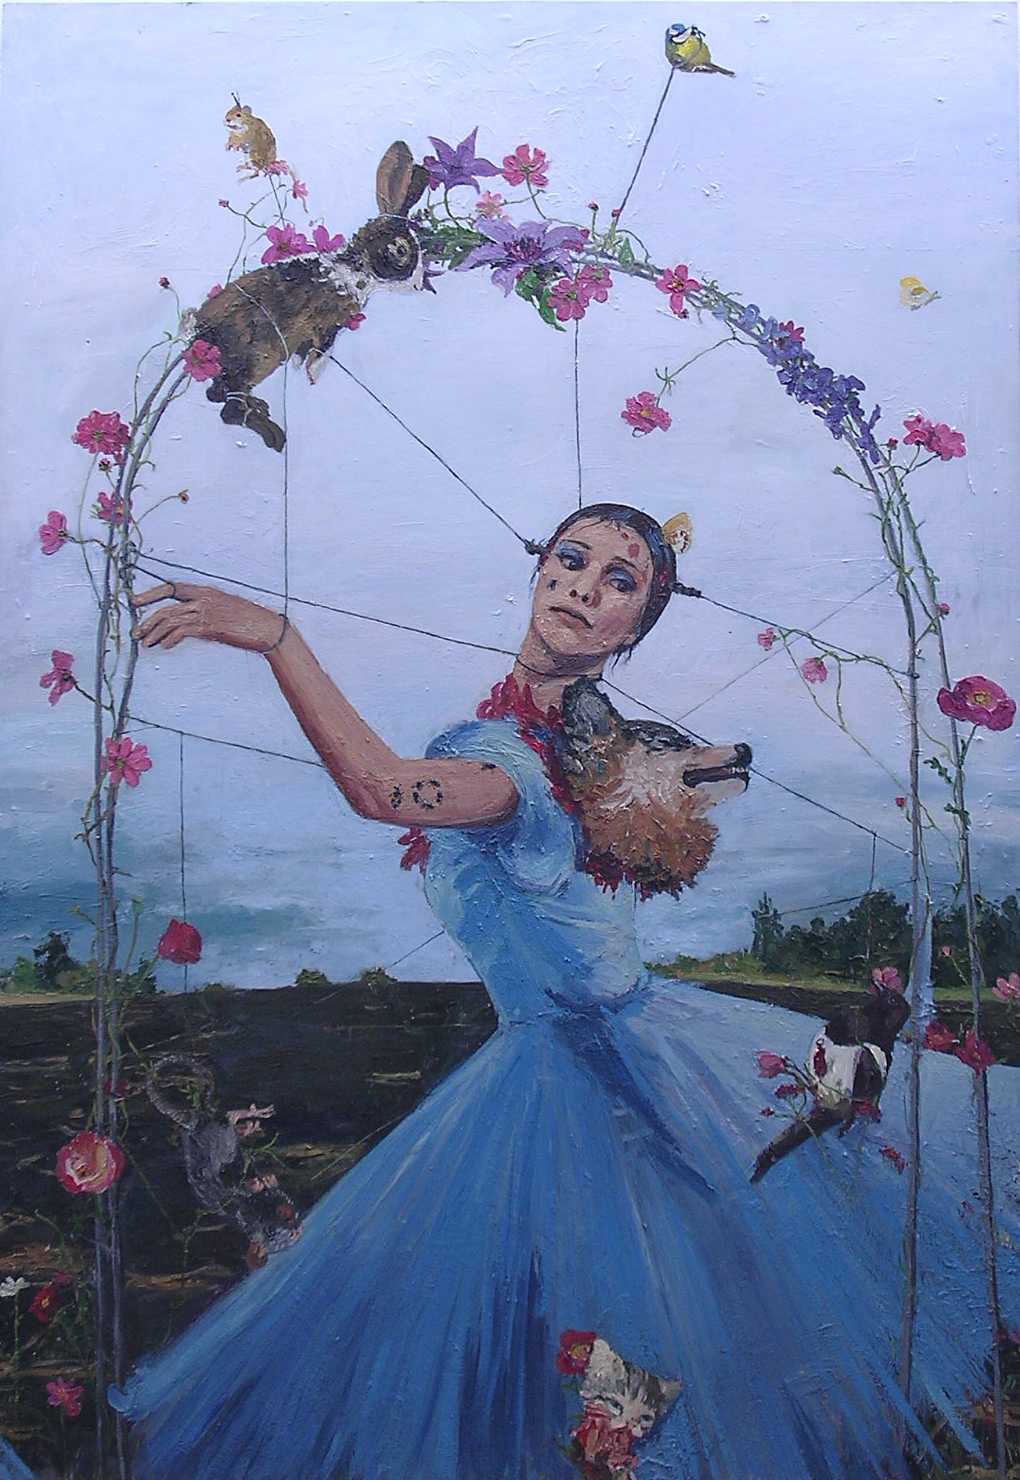 Tavla med måleri föreställande en kvinna dansande genom en portal dekorerad av blommor och döda djur